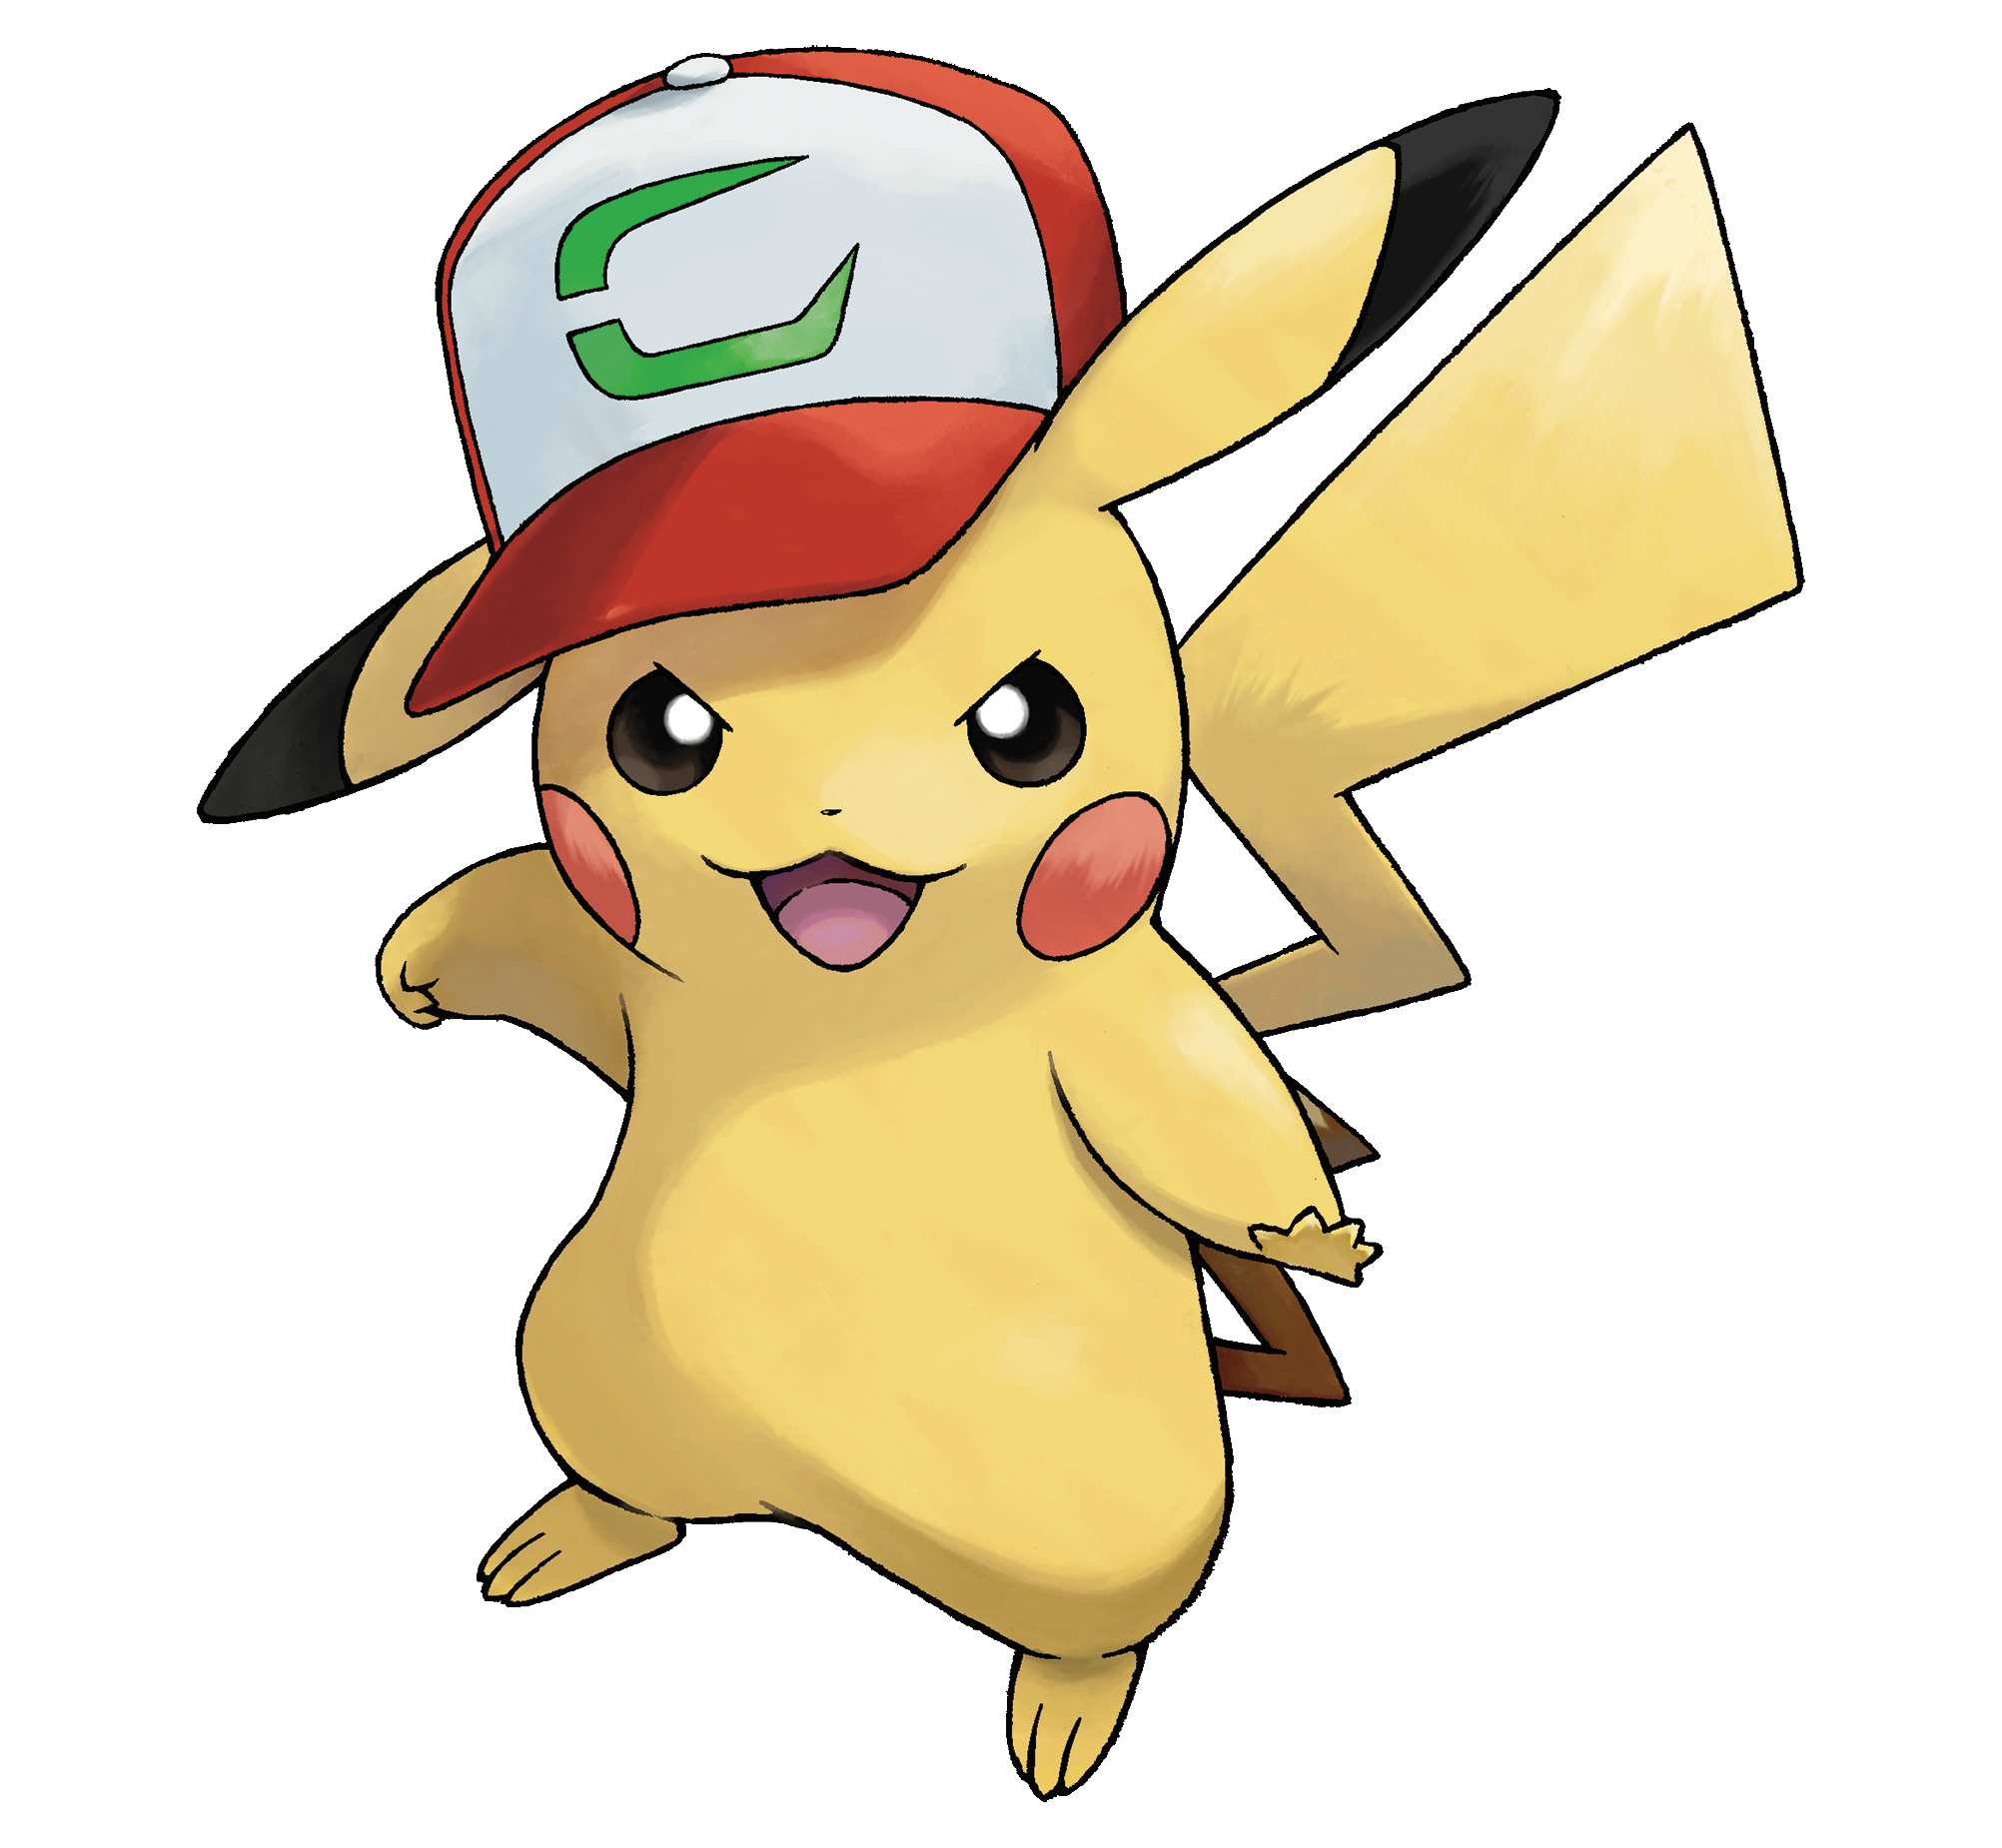 Pokemon20 - [Discusión General] Pokémon Sol & Luna y Pokémon Ultrasol & Ultraluna - Página 2 Pikachu_compa%C3%B1ero